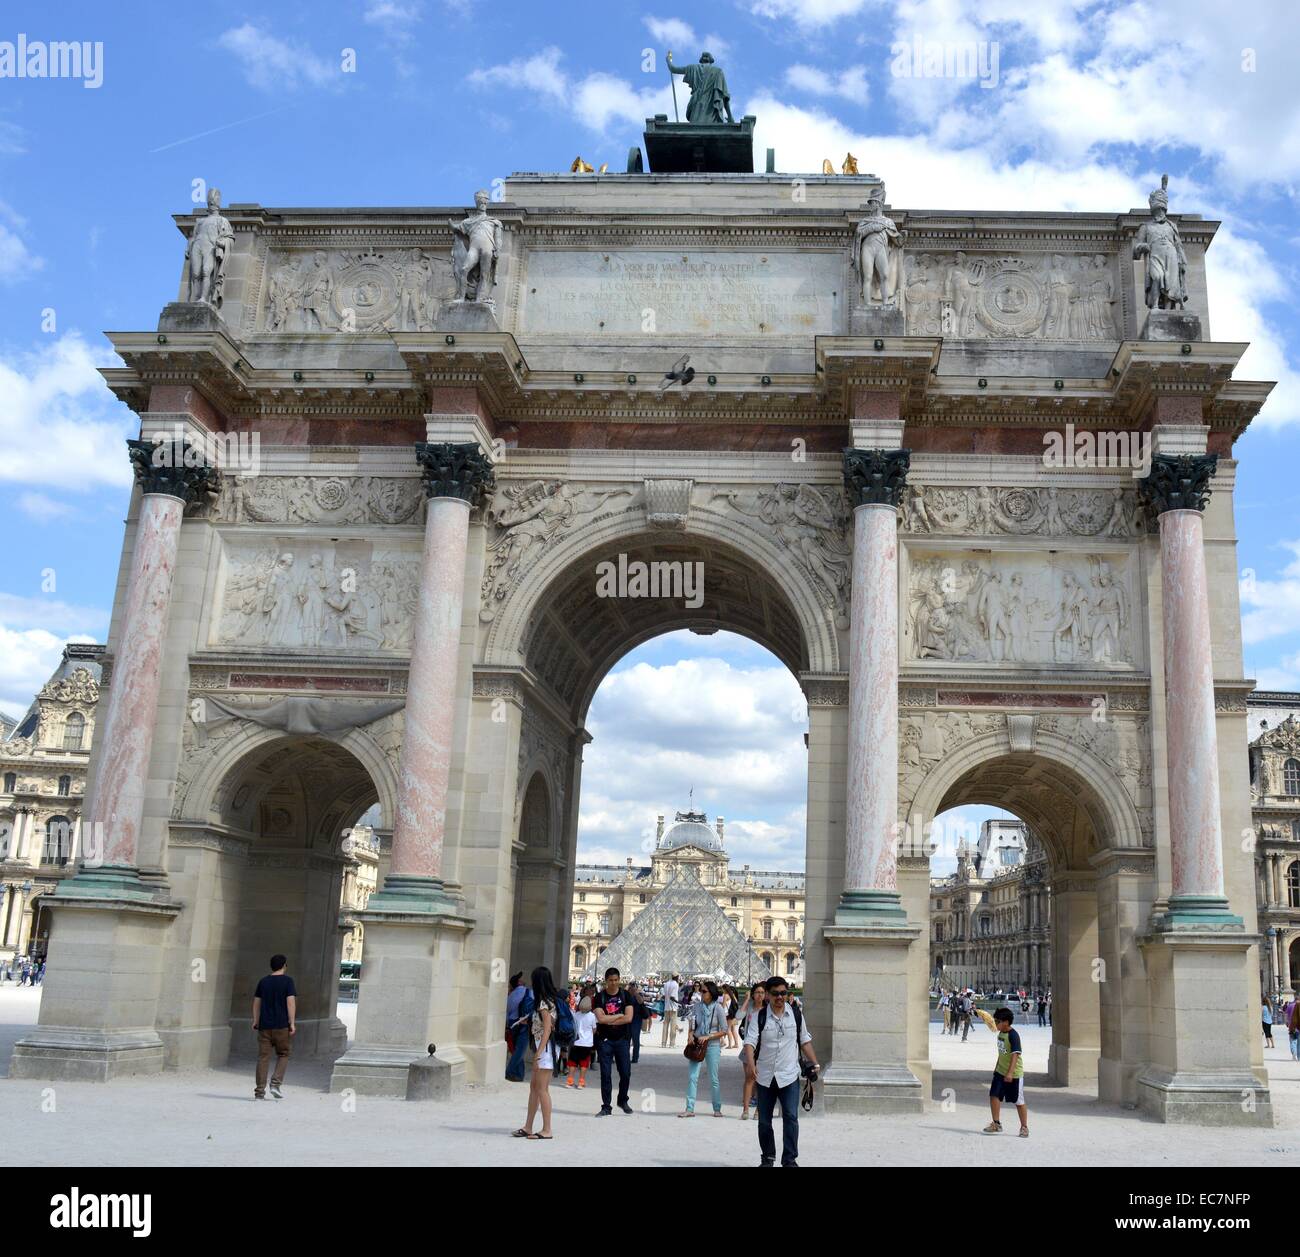 L'Arc de triomphe du Carrousel è un arco trionfale a Parigi, situato in Place du giostra sul sito dell'ex palazzo delle Tuileries. Fu costruita tra il 1806 e il 1808 per commemorare Napoleone vittorie militari dell'anno precedente. Foto Stock